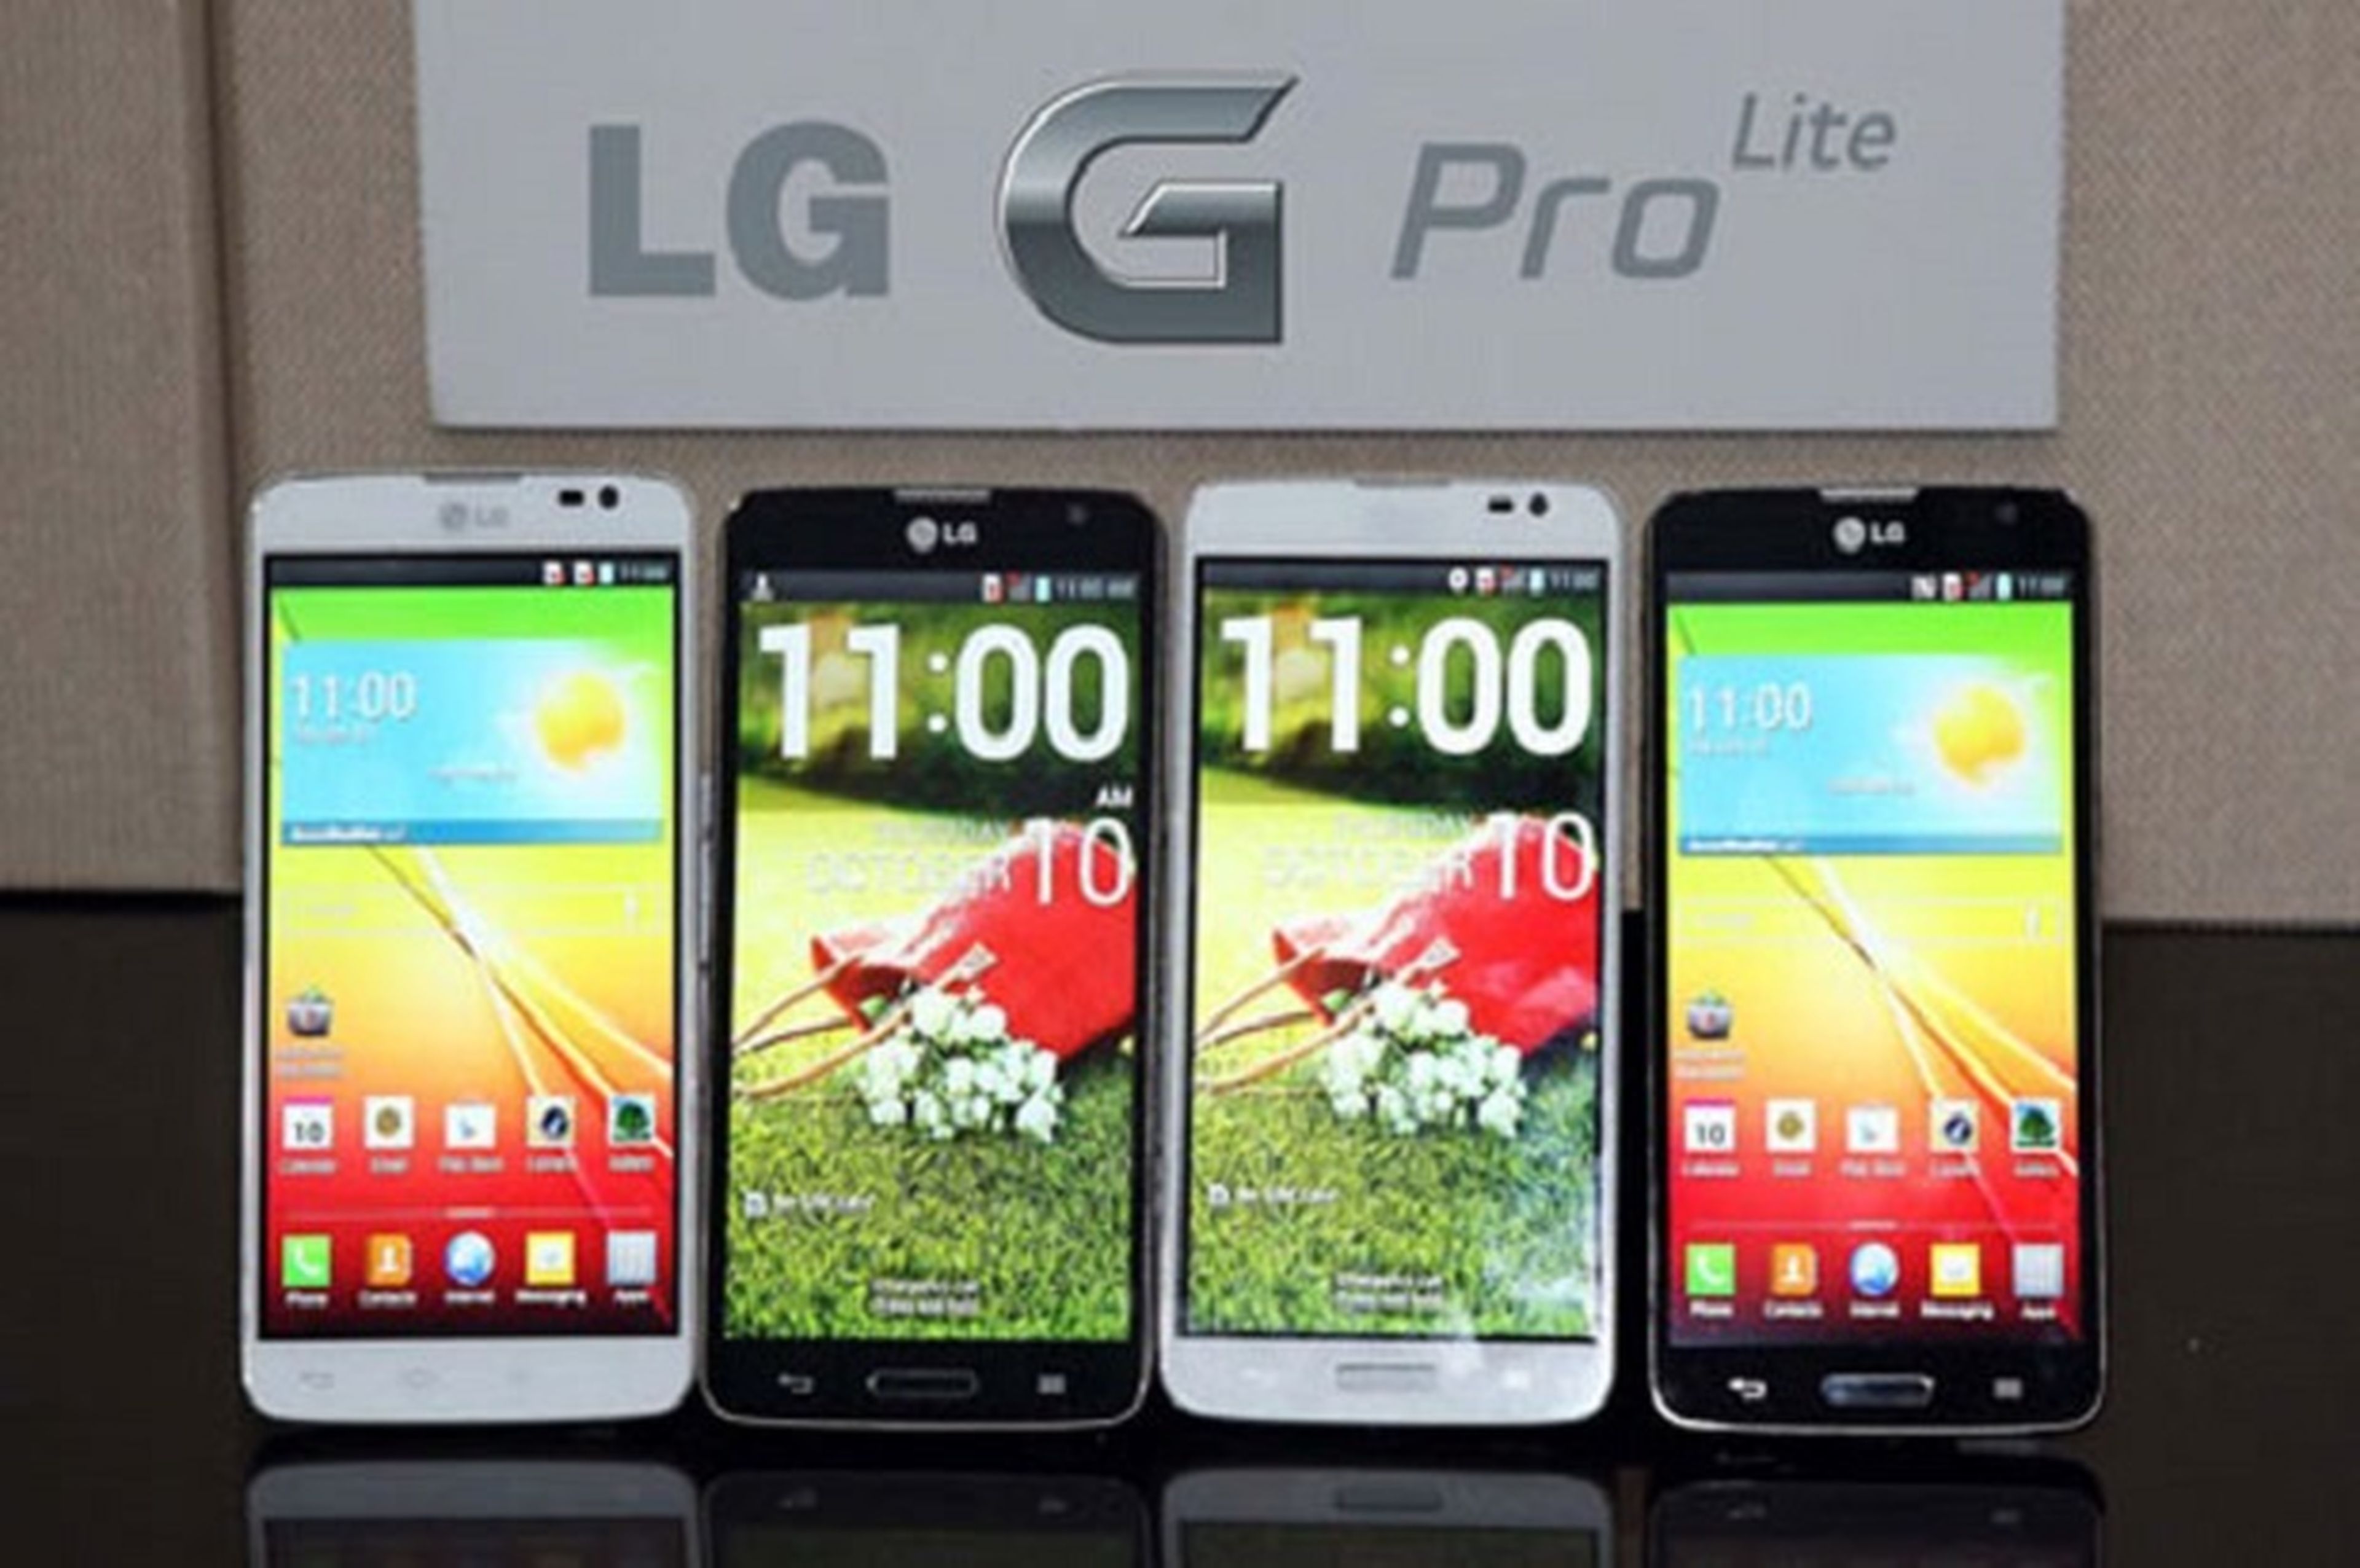 LG G Pro, anunciado con pantalla de 5,5 pulgadas